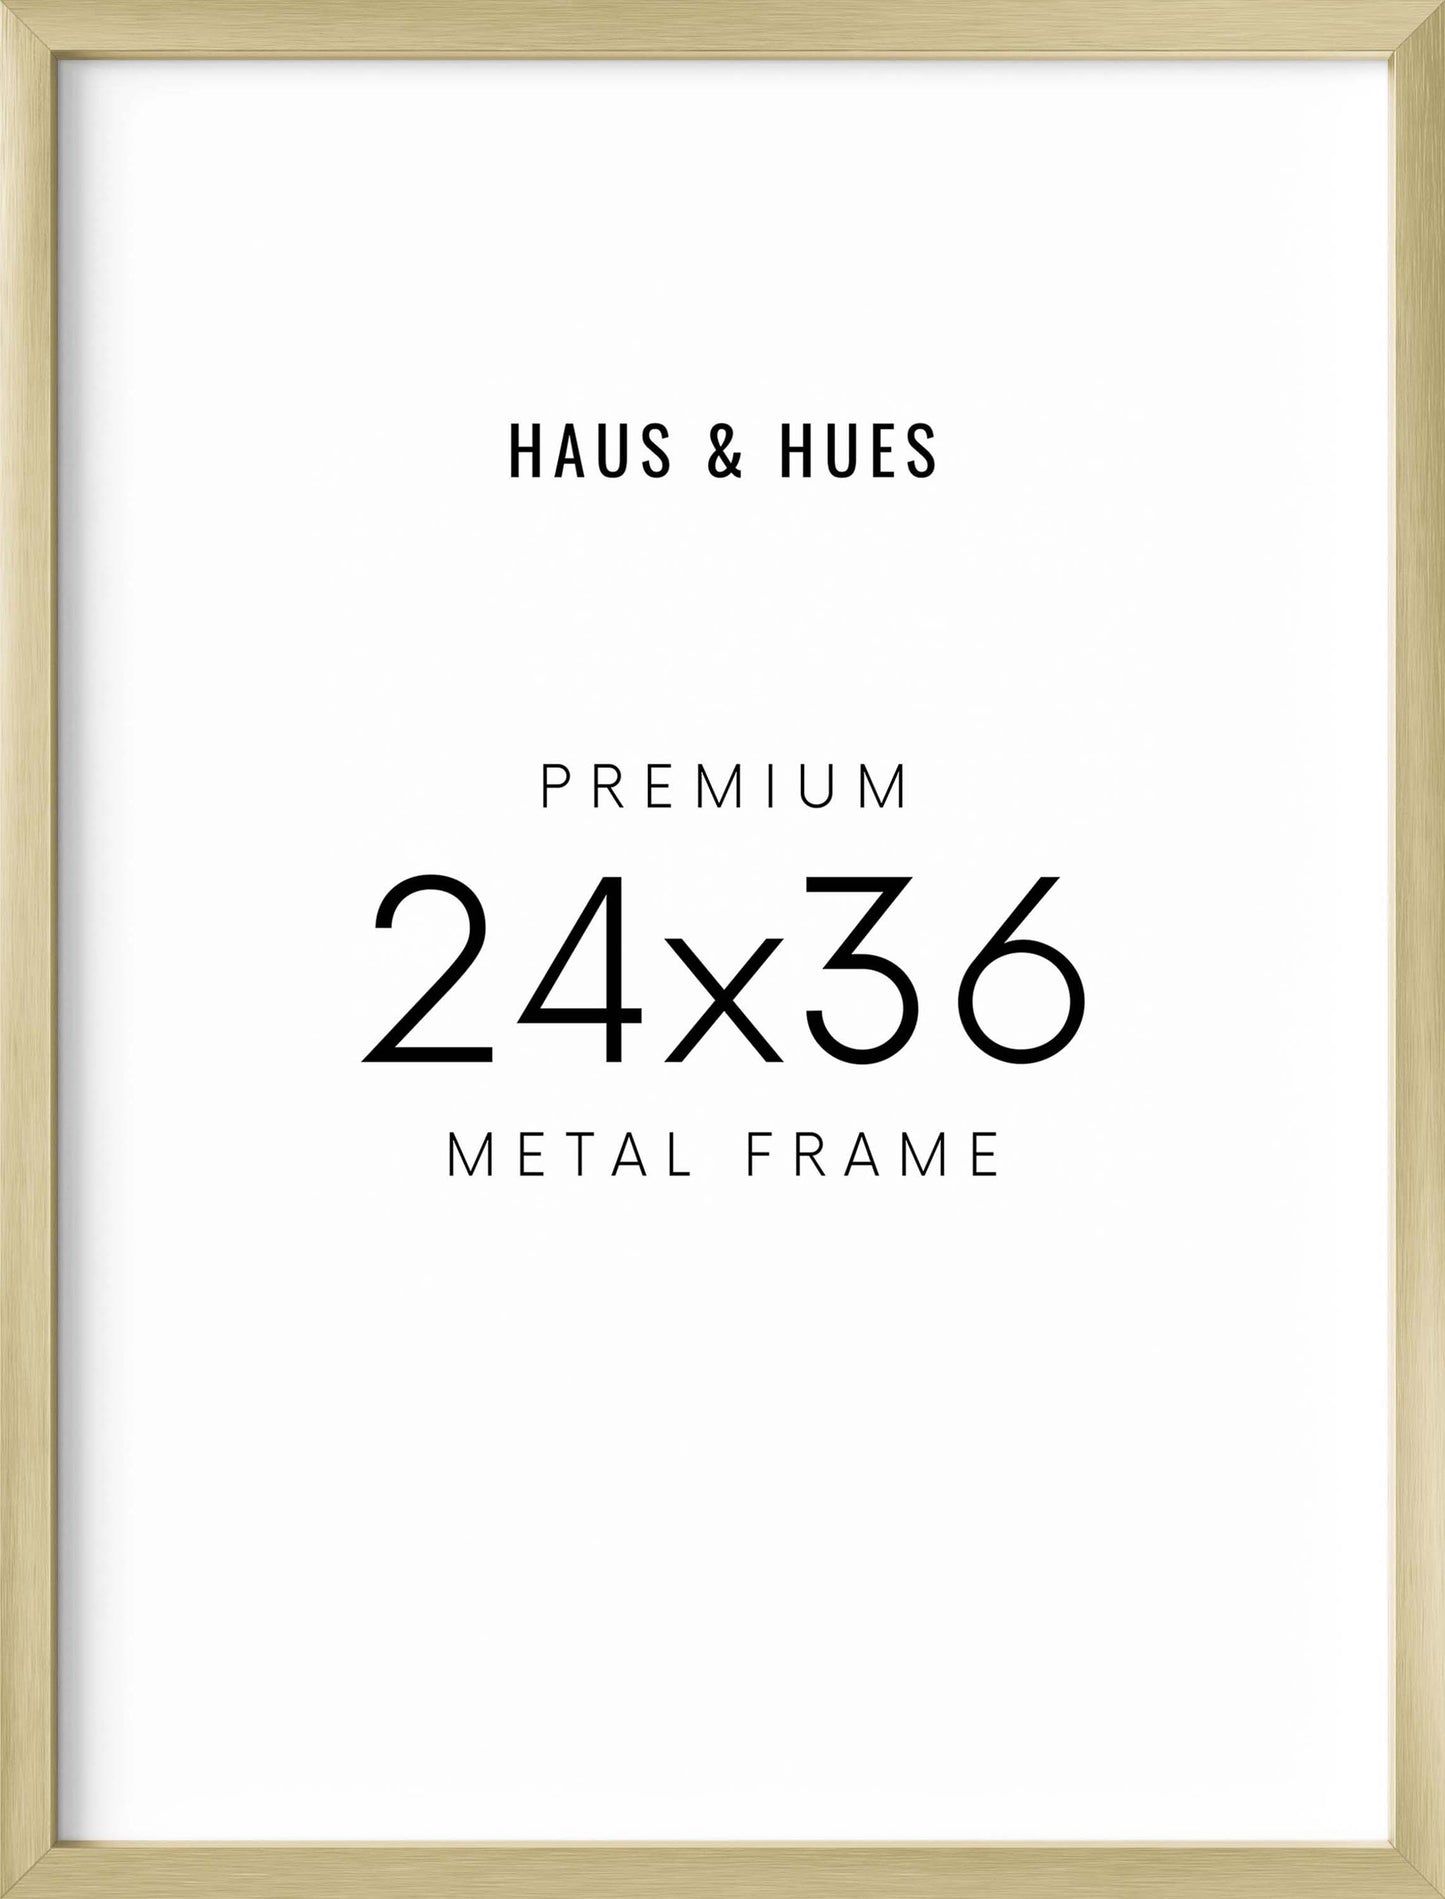 24x36 in, Set of 6, Gold Aluminum